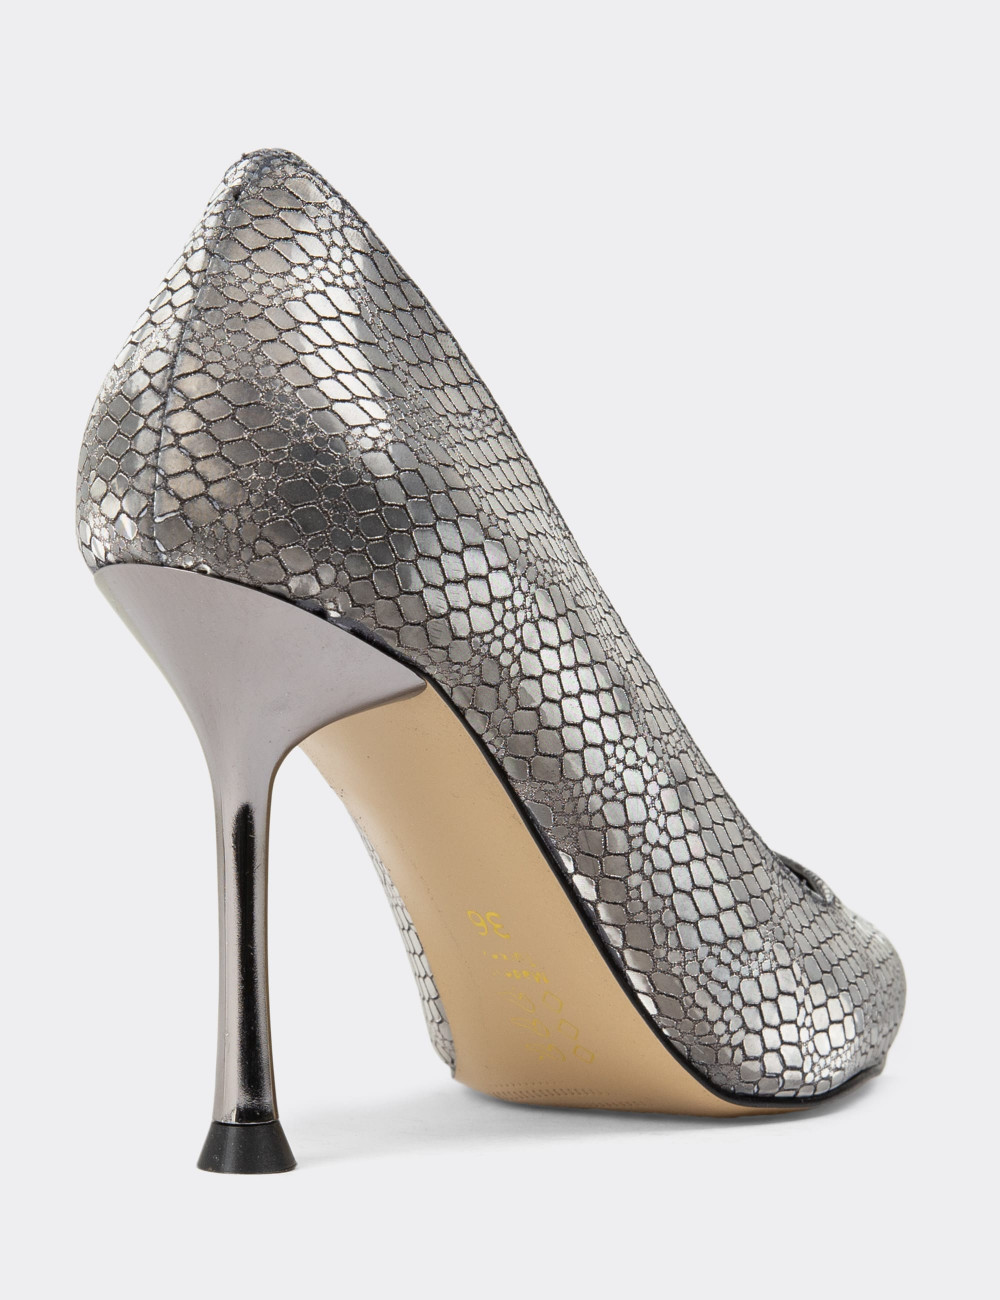 Platin Stiletto Kadın Topuklu Ayakkabı - K0799ZPLTM01